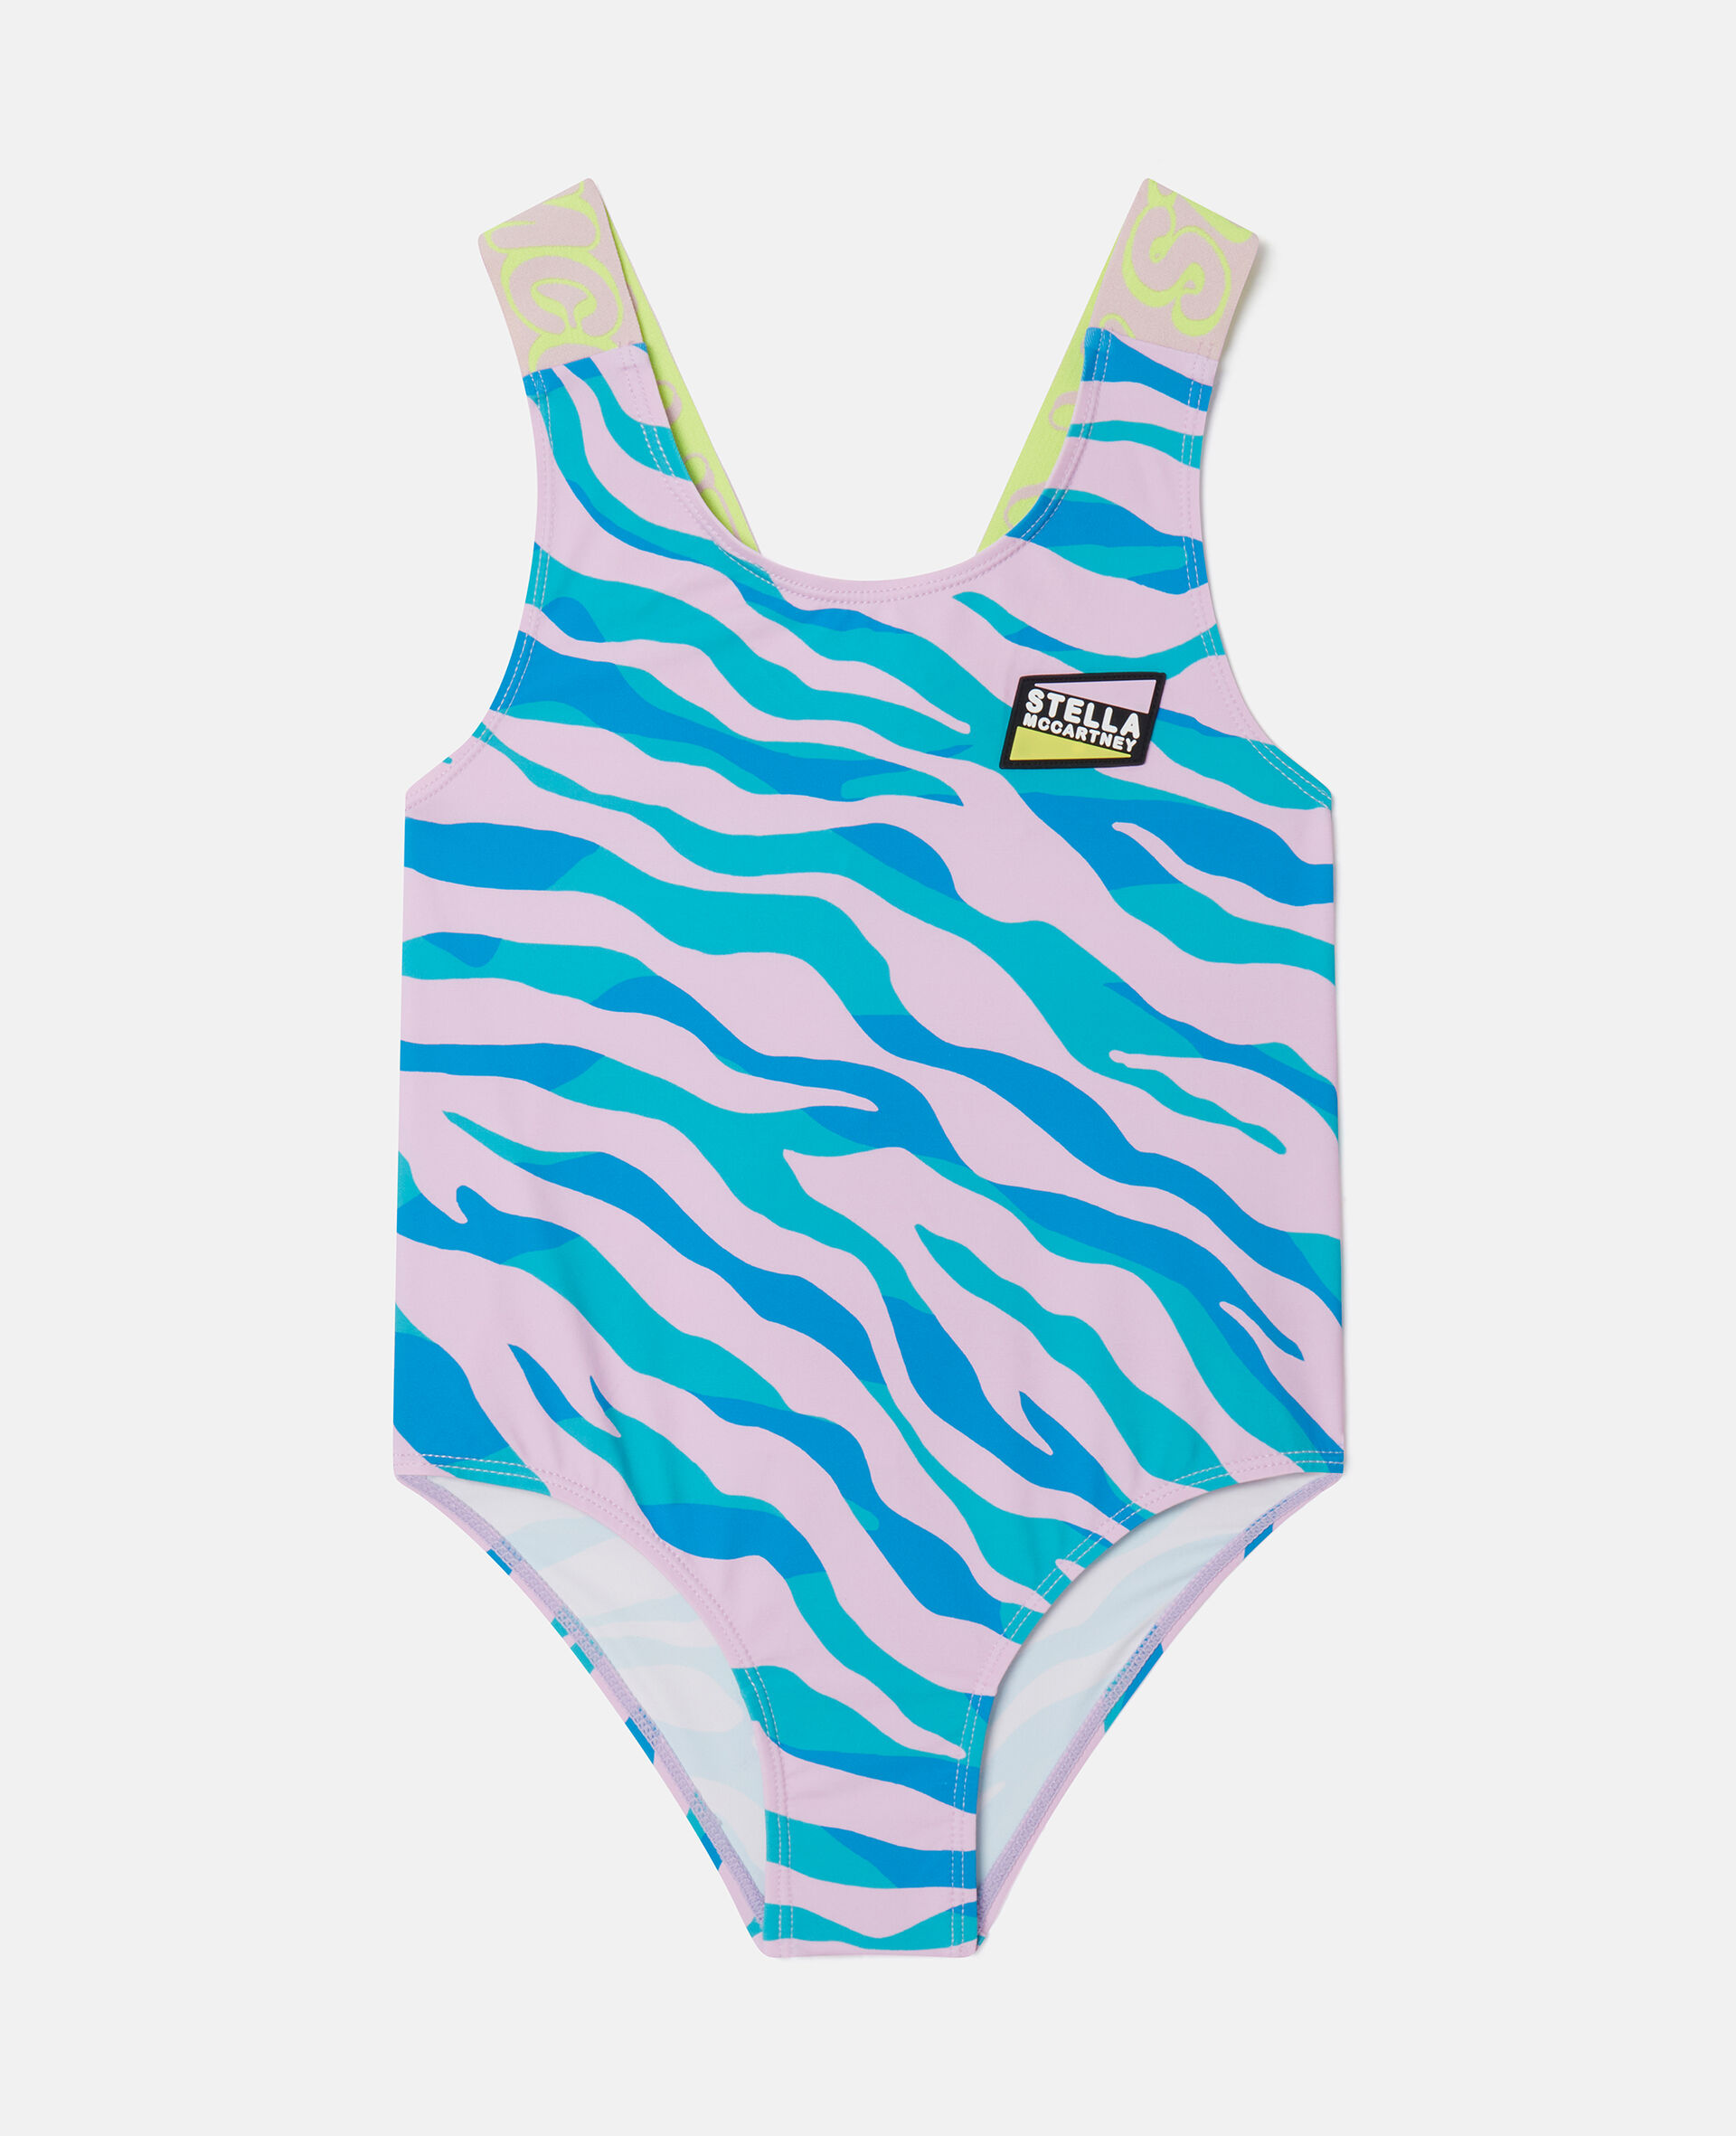 Zebra Print Swimsuit-Fantasia-large image number 0